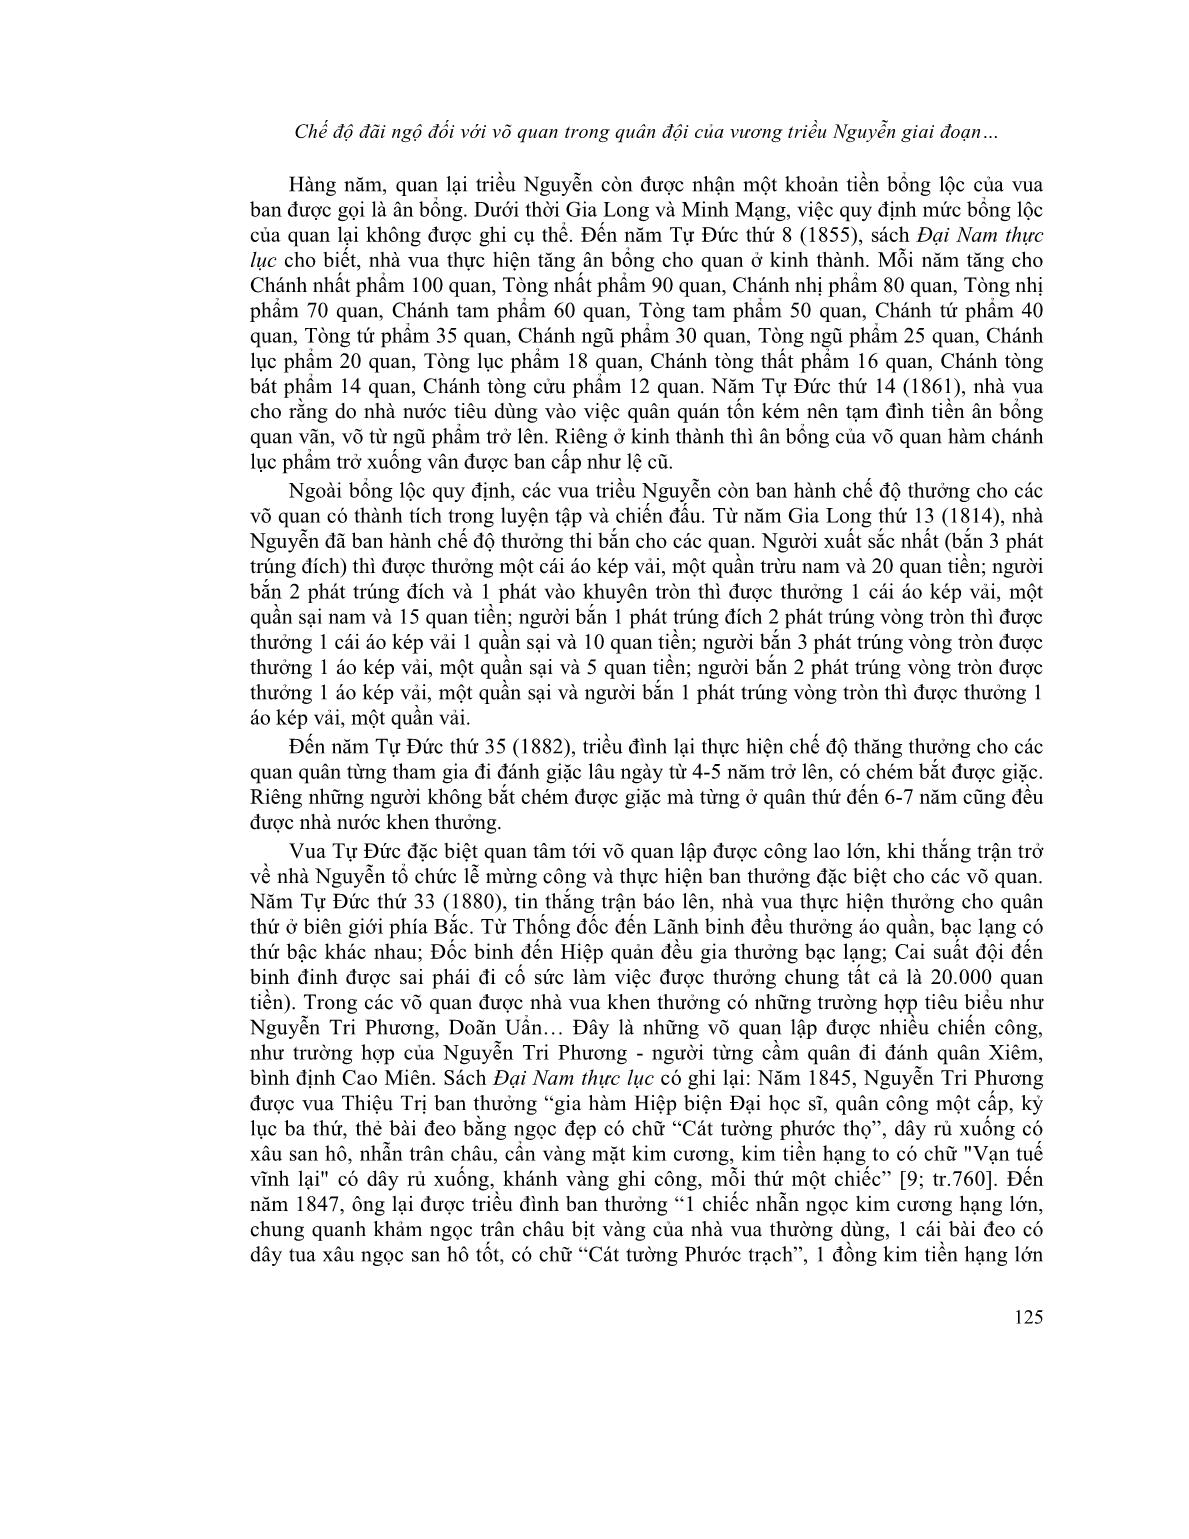 Chế độ đãi ngộ đối với võ quan trong quân đội của vương triều Nguyễn giai đoạn 1802-1884 trang 6